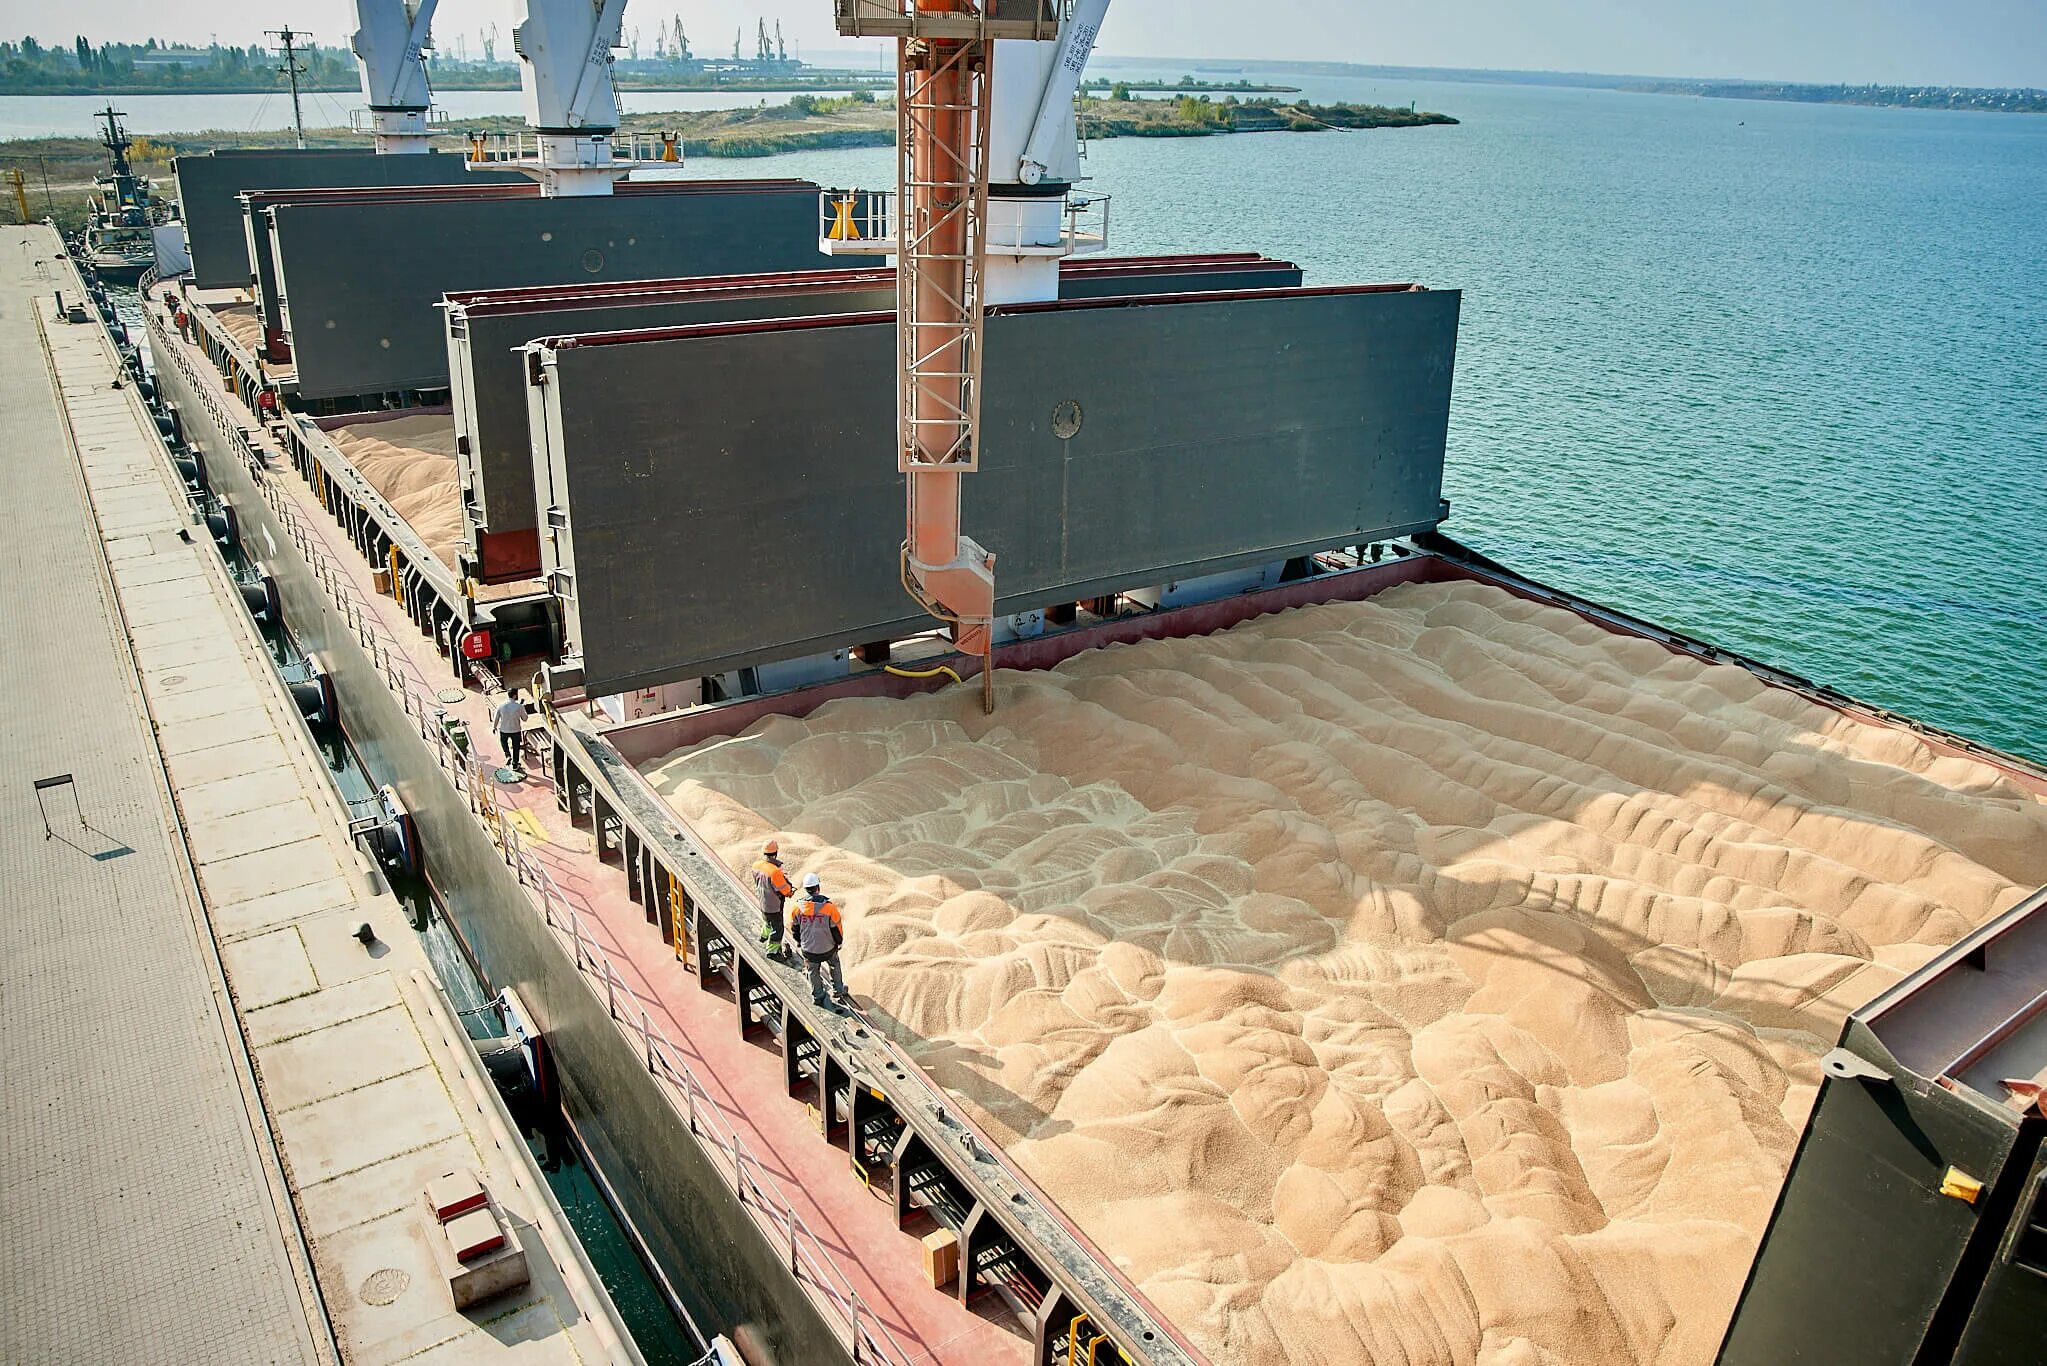 Погрузка зерна на судно в порту Украины. Перевалка зерна ФЕТЭКСИМ. Портовый терминал по перевалке зерна. Порт Одесса перевалка зерна. 12 млн тонн